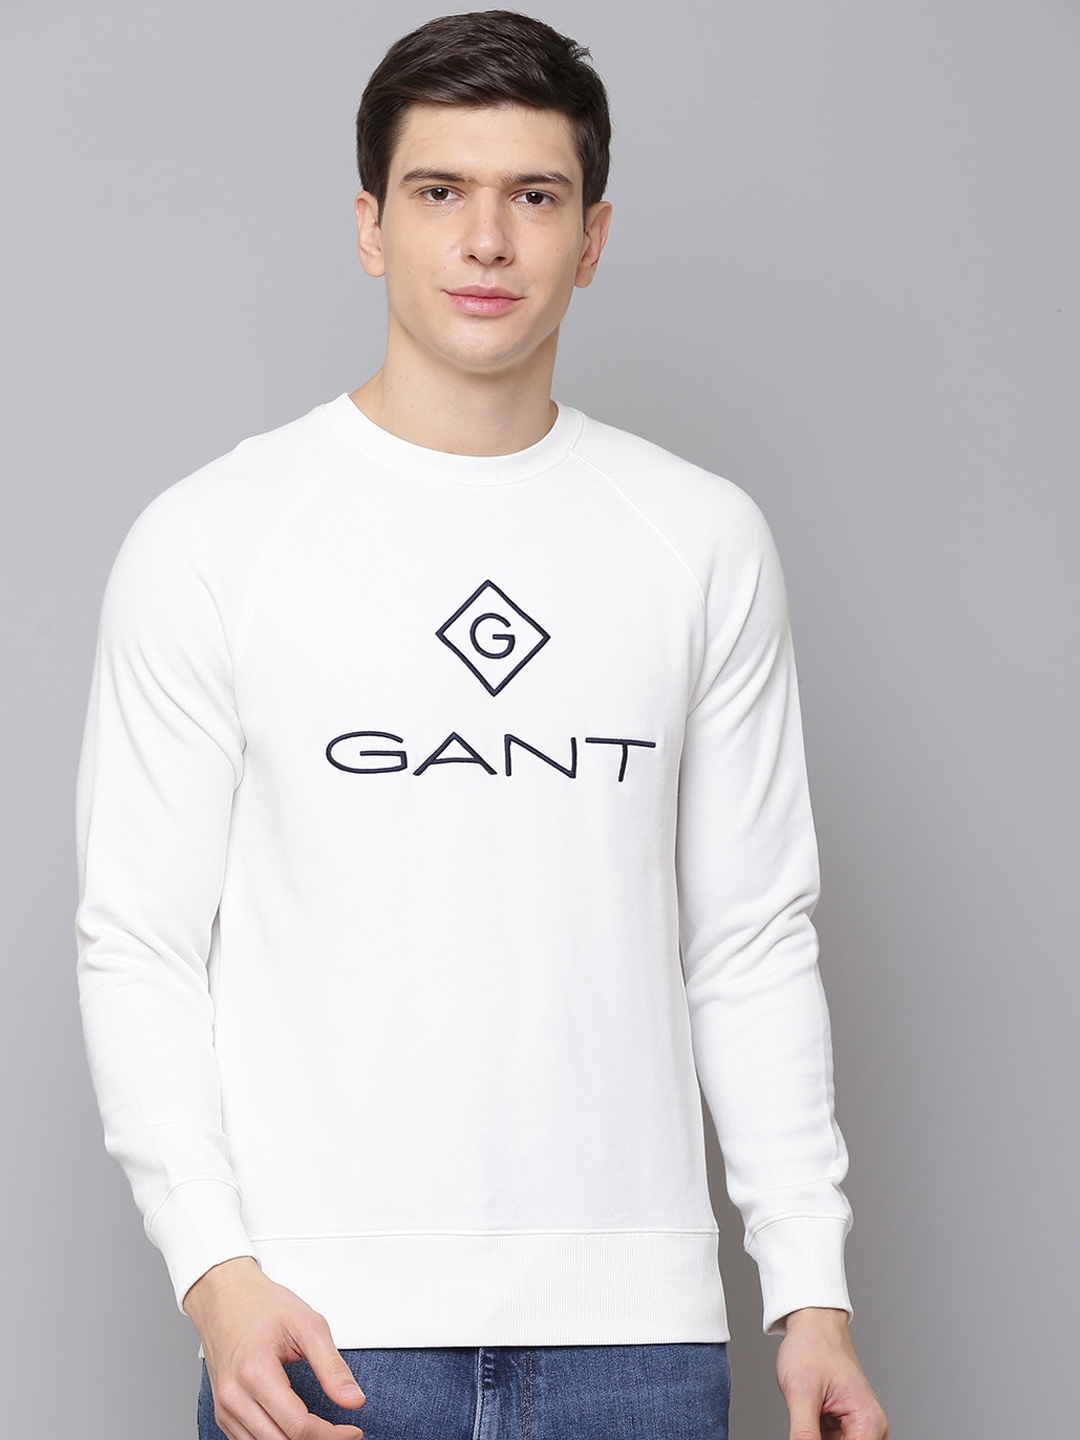 Buy GANT Men White Printed Sweatshirt - Sweatshirts for Men 13170822 ...